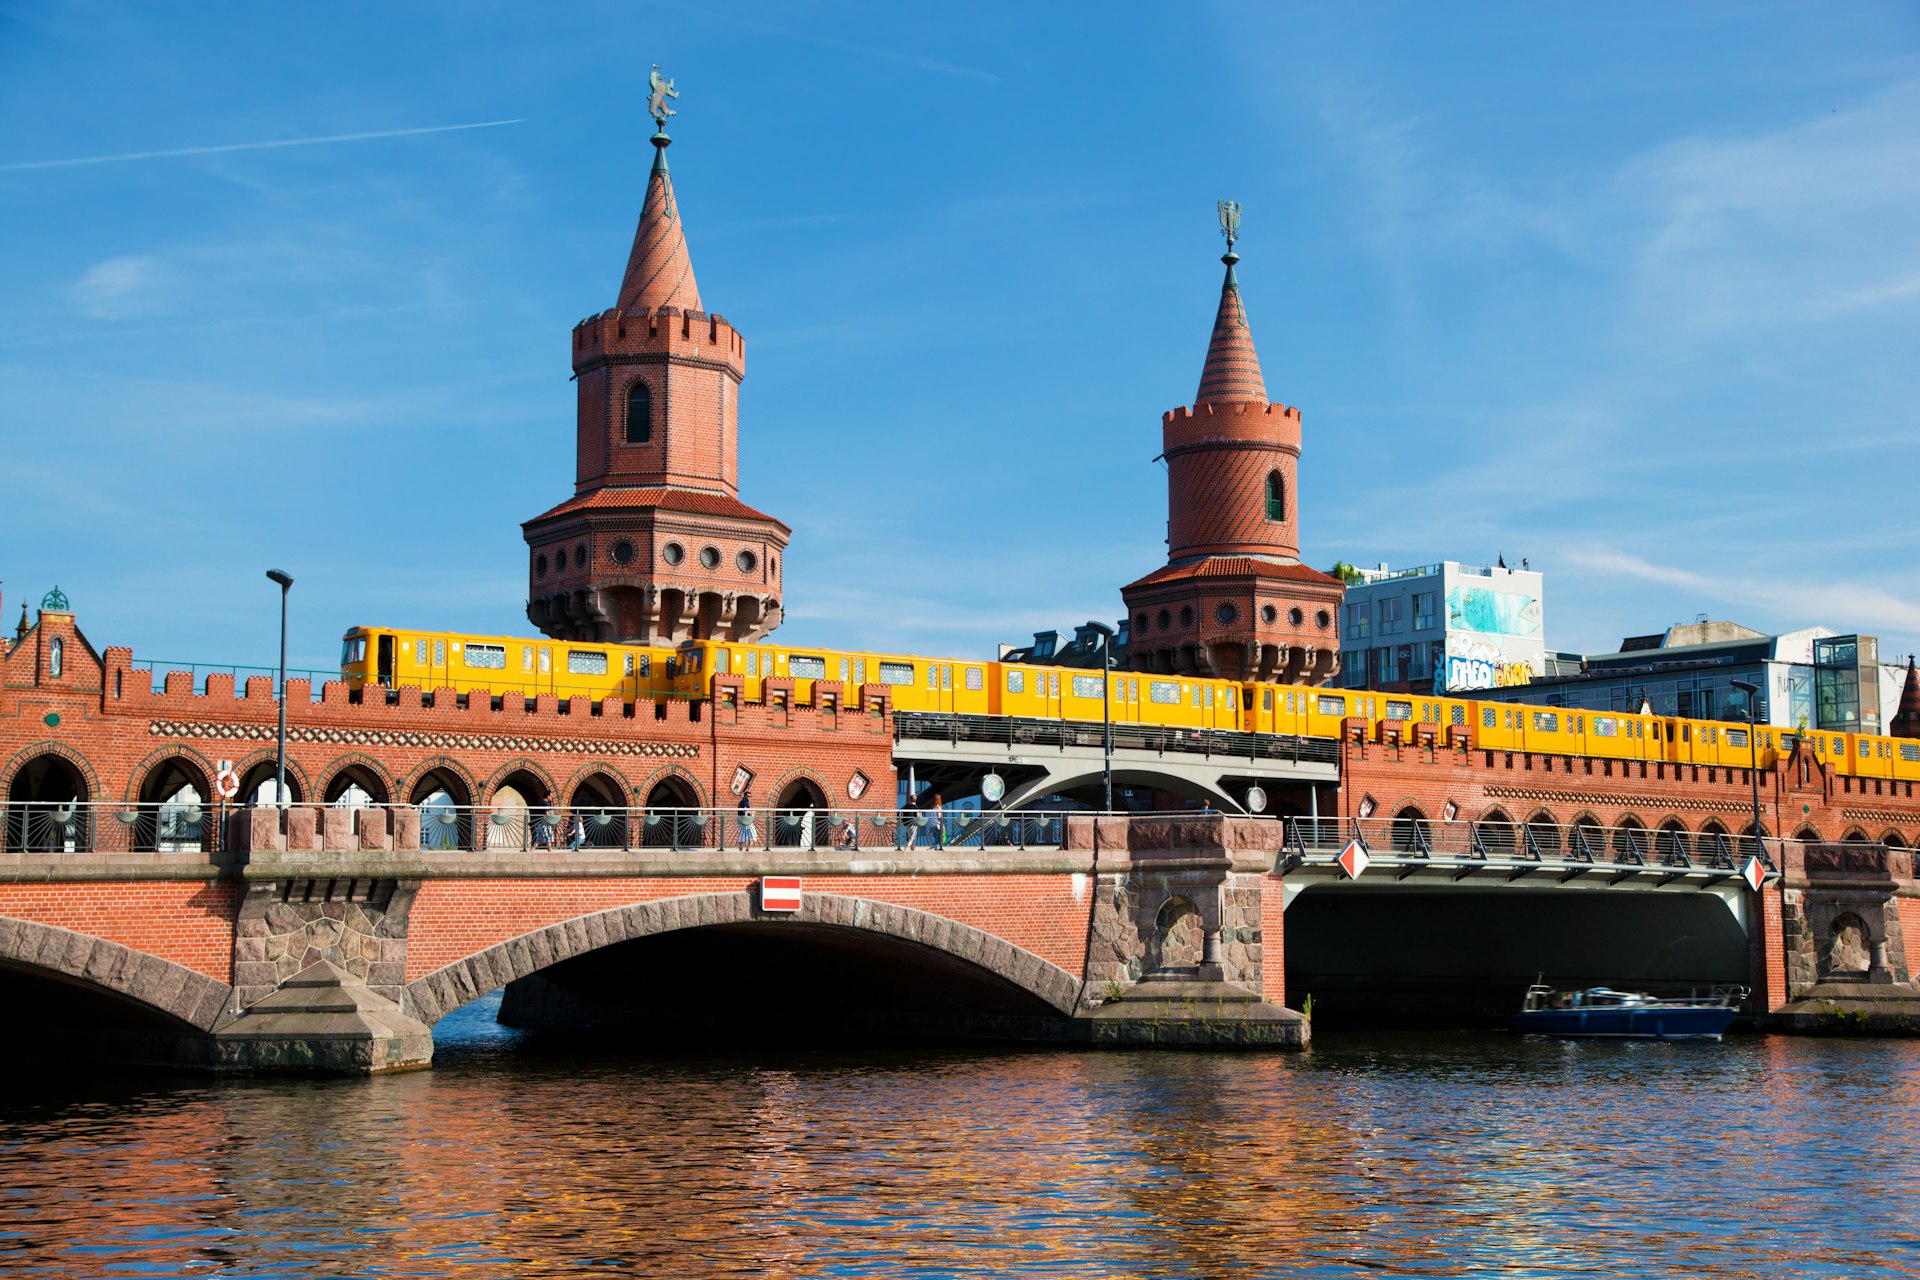 The U-bahn going over the Oberbaum Bridge in Berlin